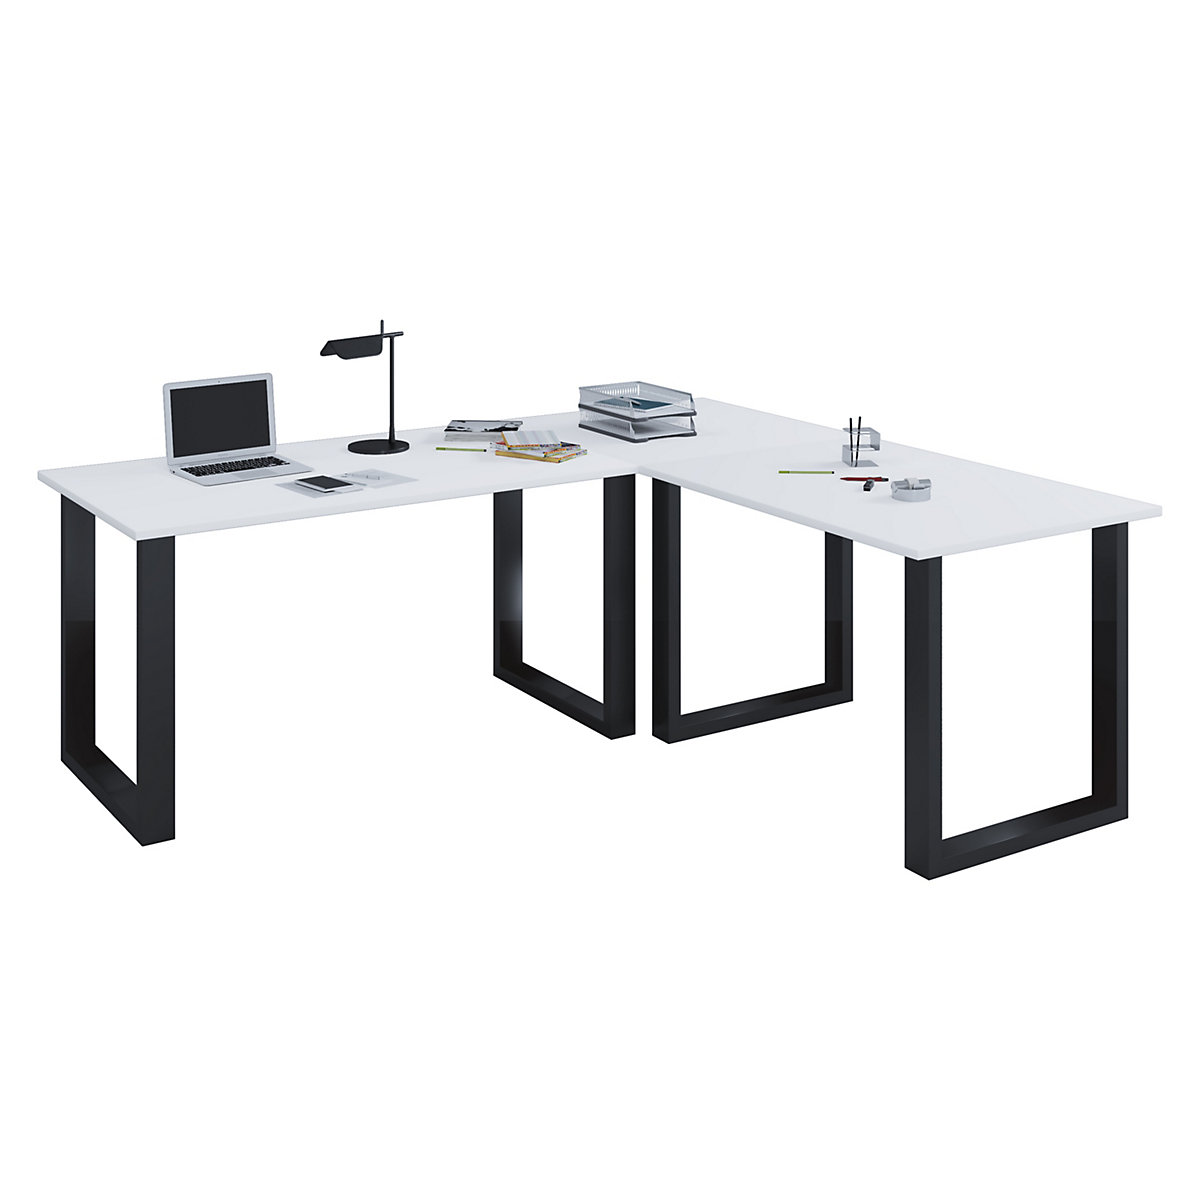 VCM Eckschreibtisch Schreibtisch Büromöbel Computertisch Winkeltisch Tisch Büro Lona 190 x 190 x 50 cm